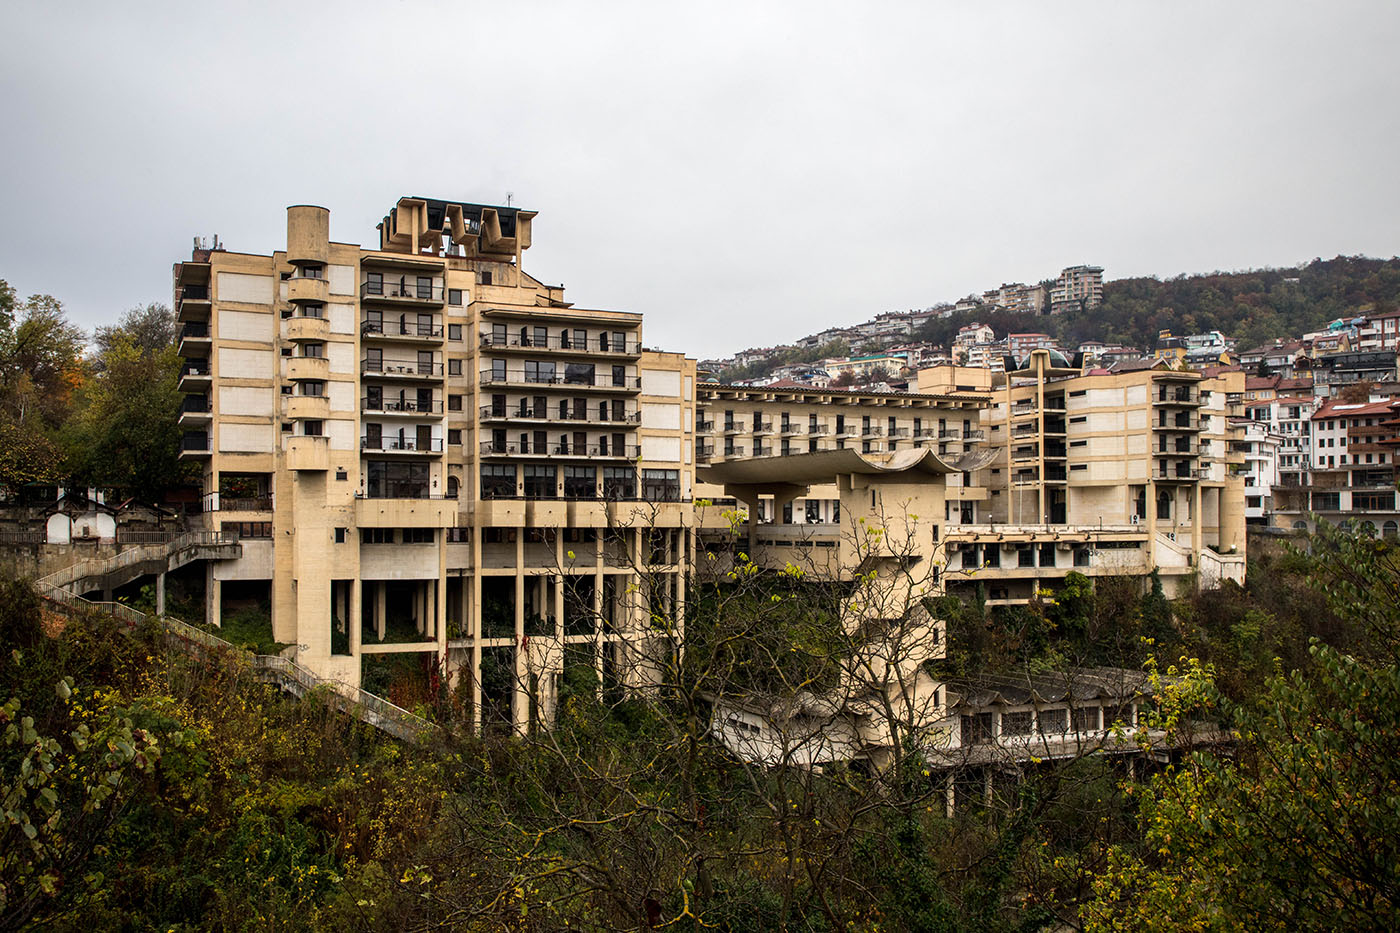 Interhotel Veliko Turnovo, view from across the river in November 2019.